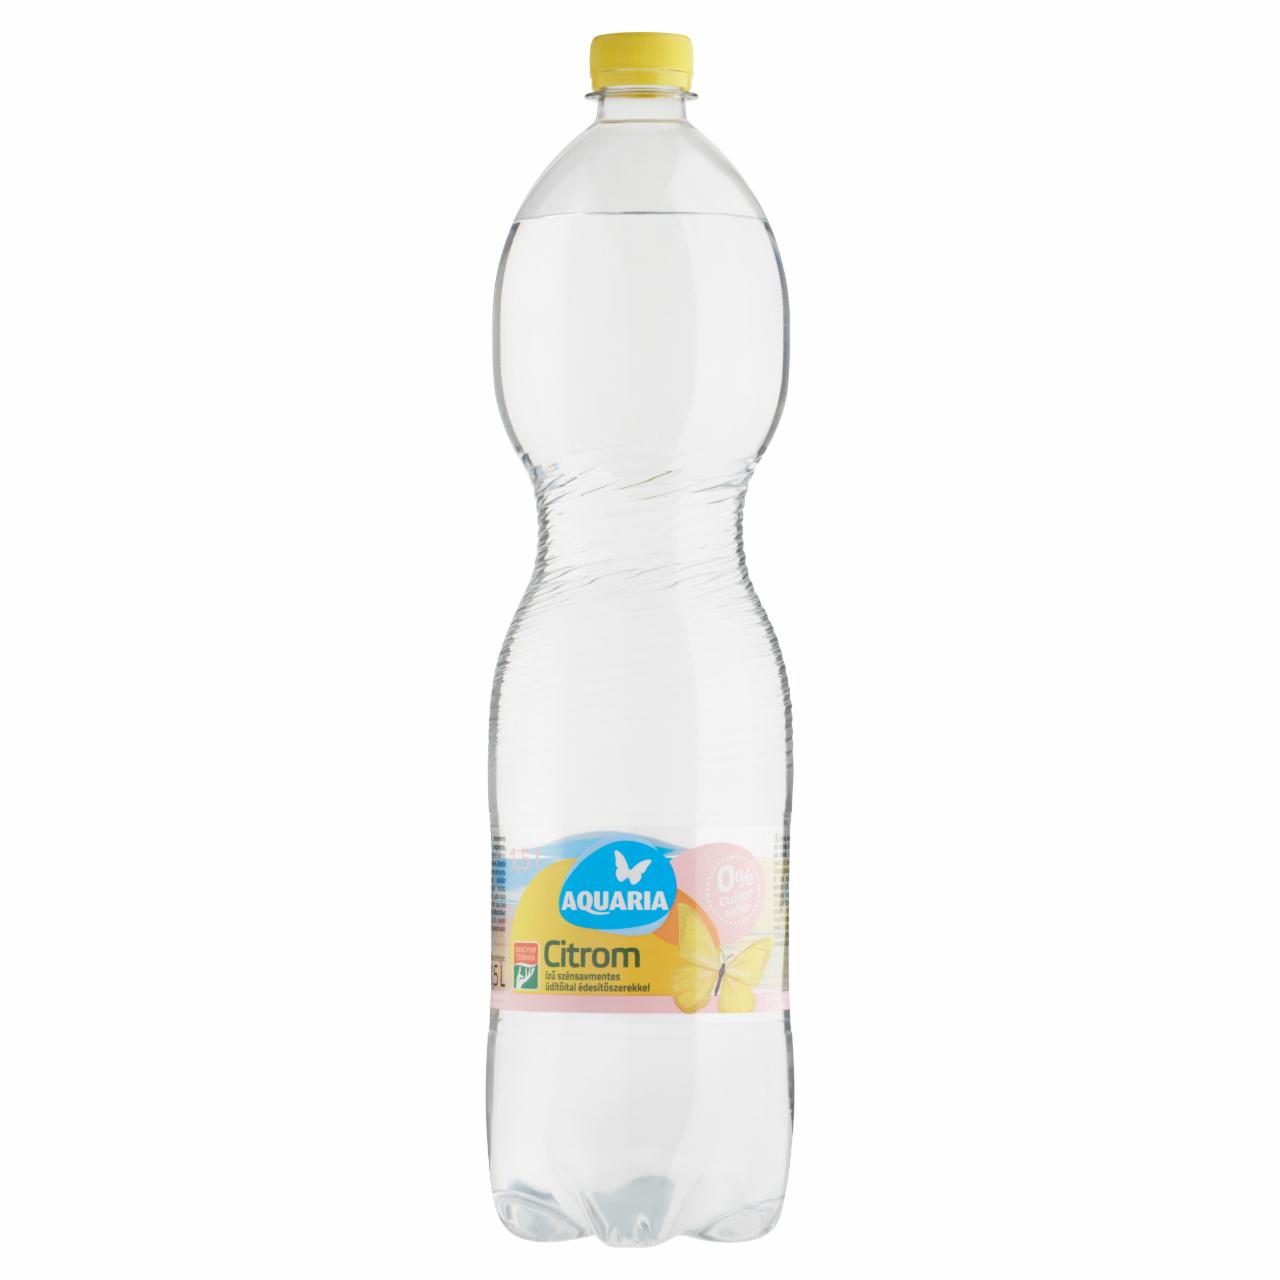 Képek - Aquaria energiamentes citrom ízű szénsavmentes üdítőital édesítőszerekkel, ásványvízből 1,5 l